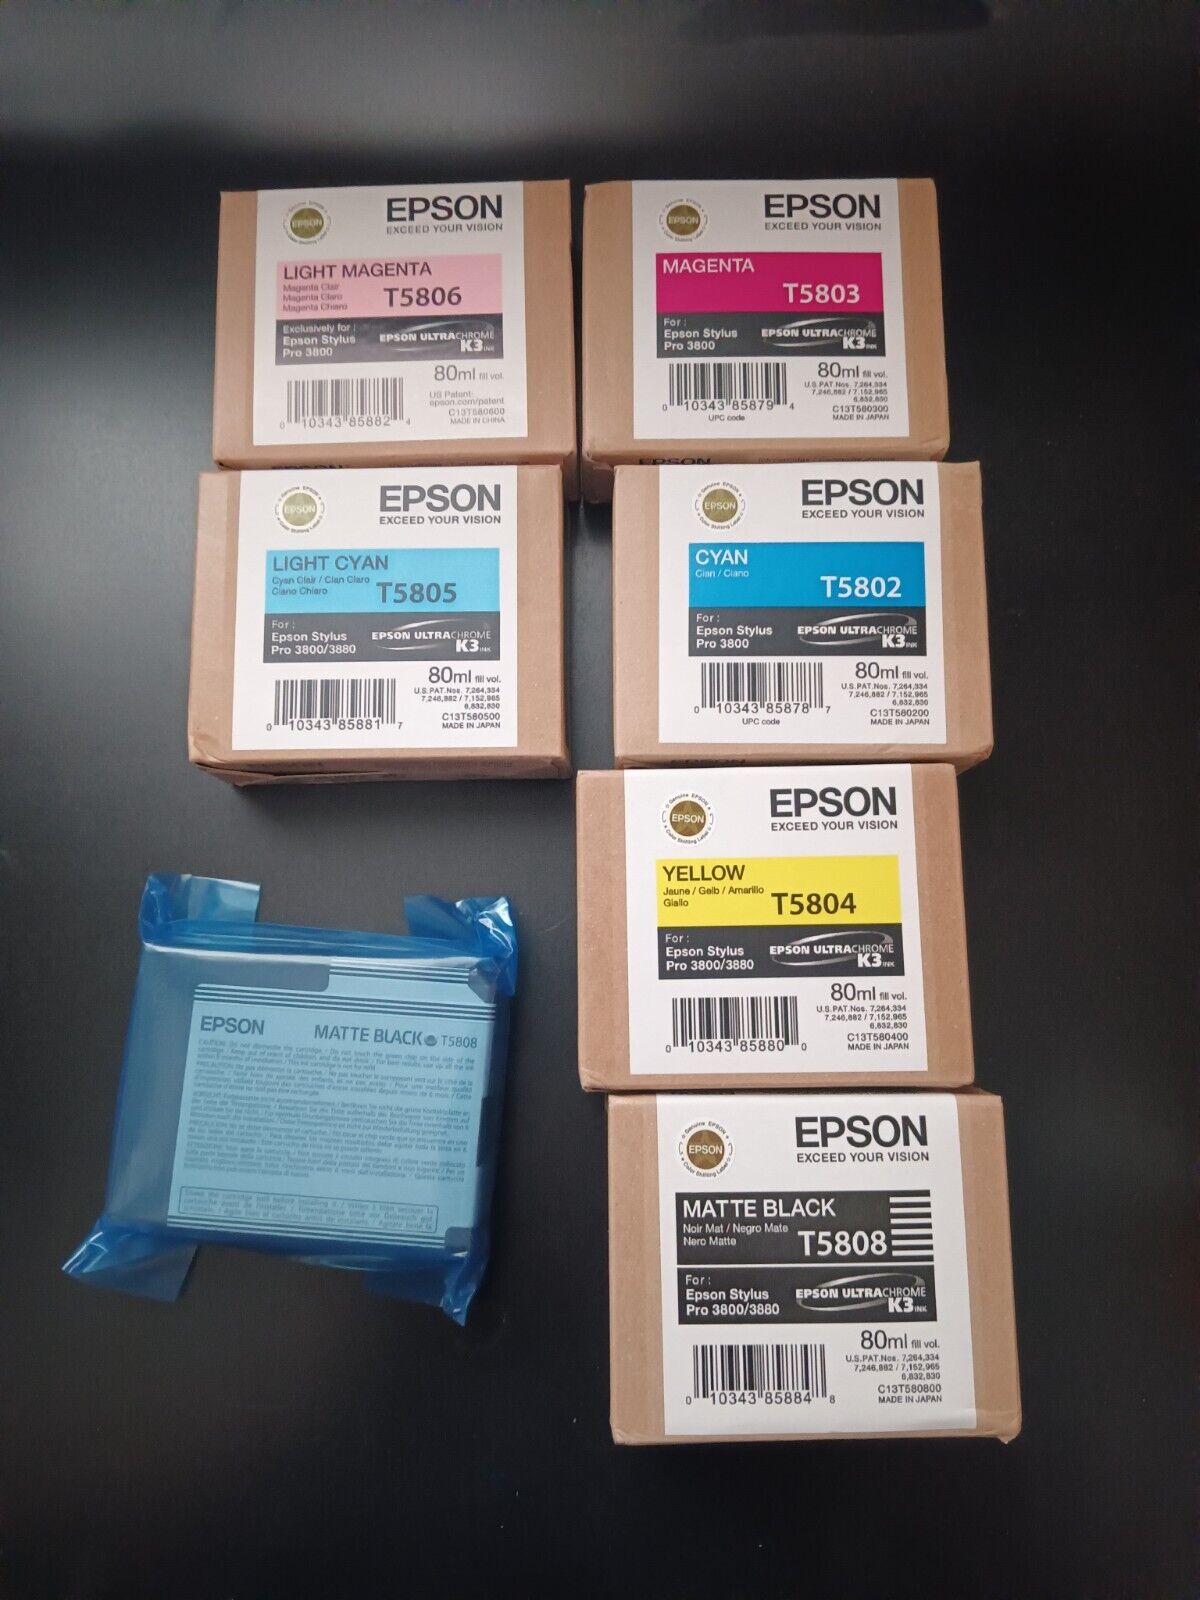 7 Epson Stylus Pro 3800 ink Cartridges Expired Ink 2011 Brand New Sealed